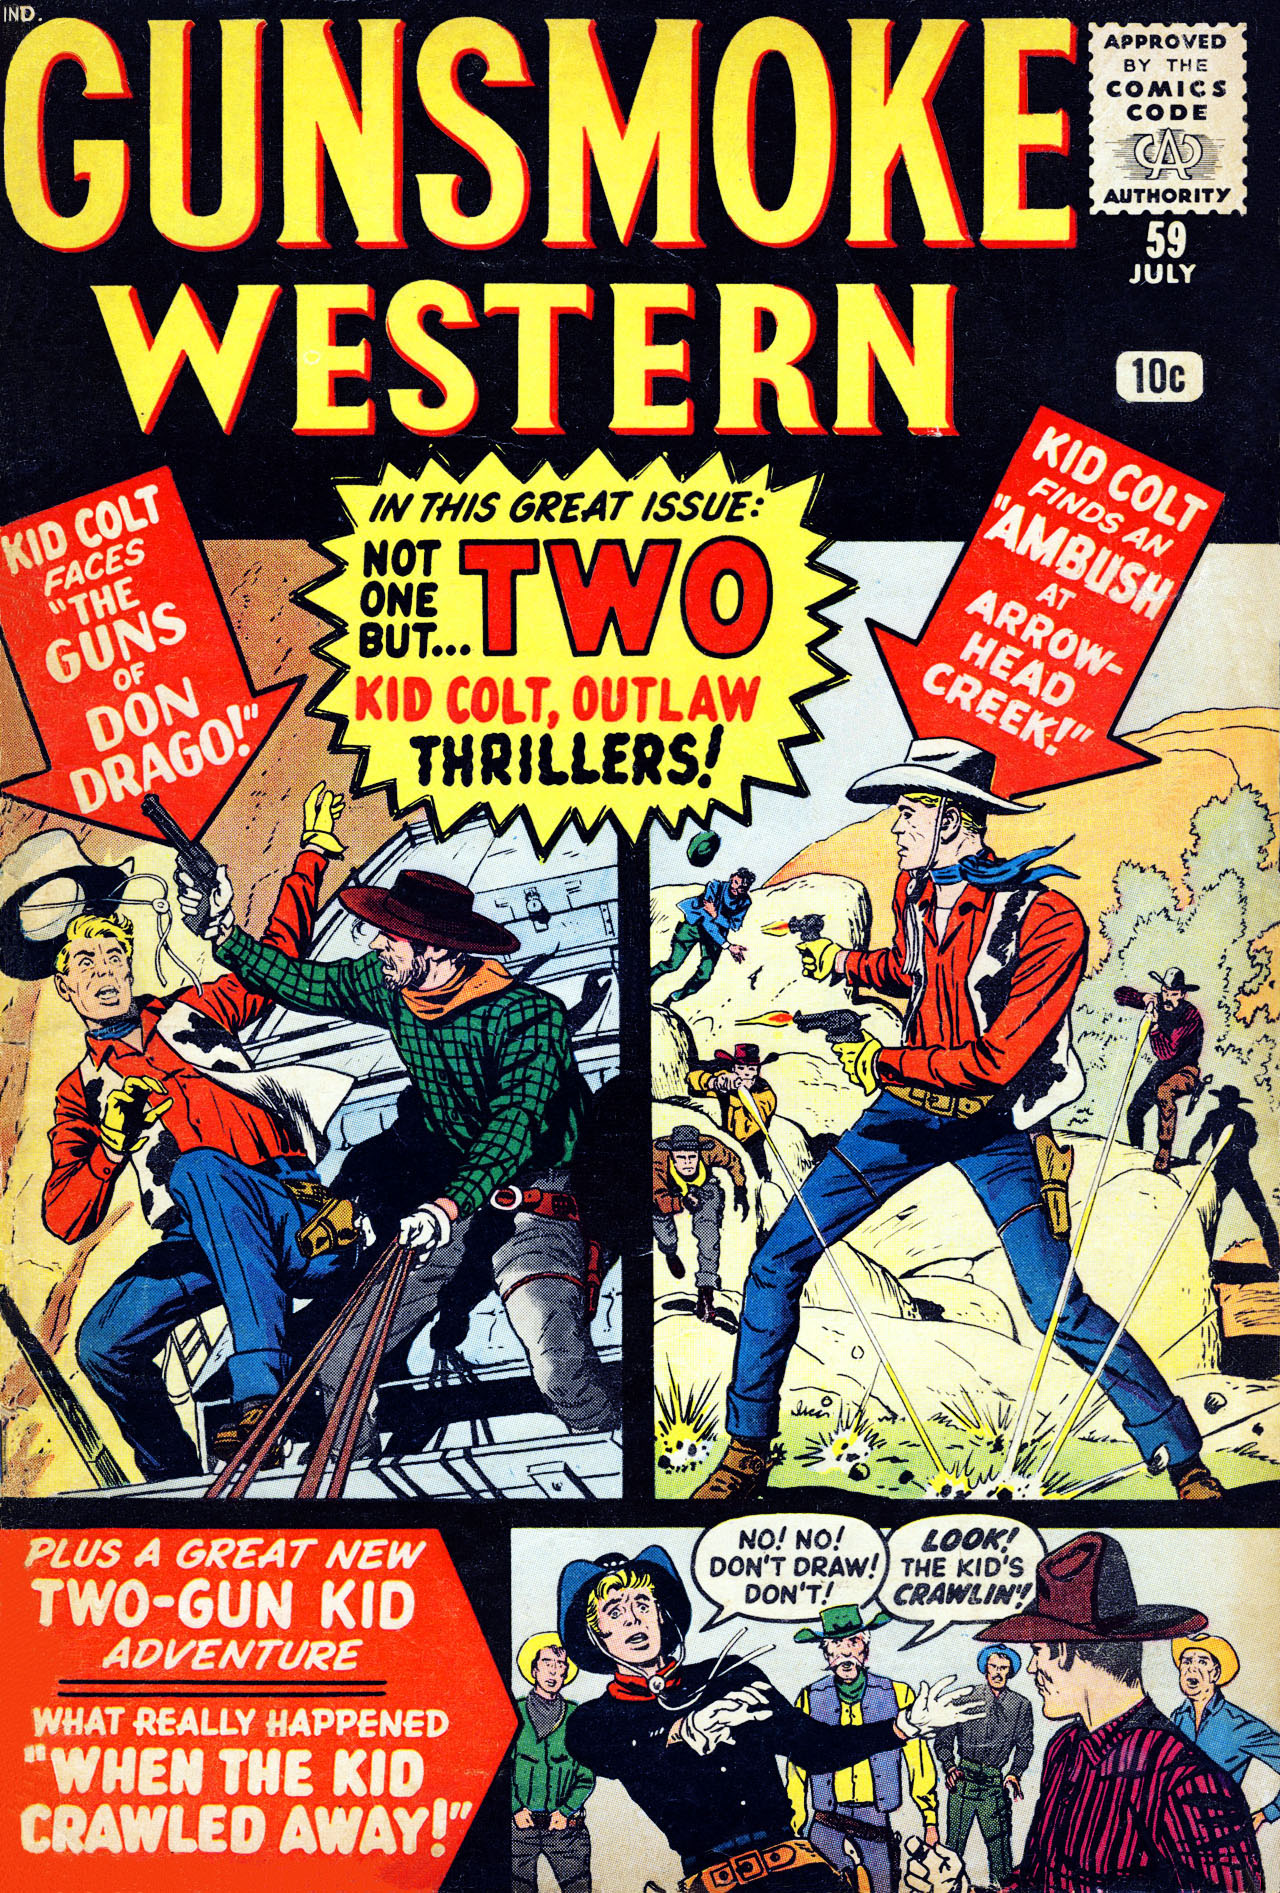 Read online Gunsmoke Western comic -  Issue #59 - 1